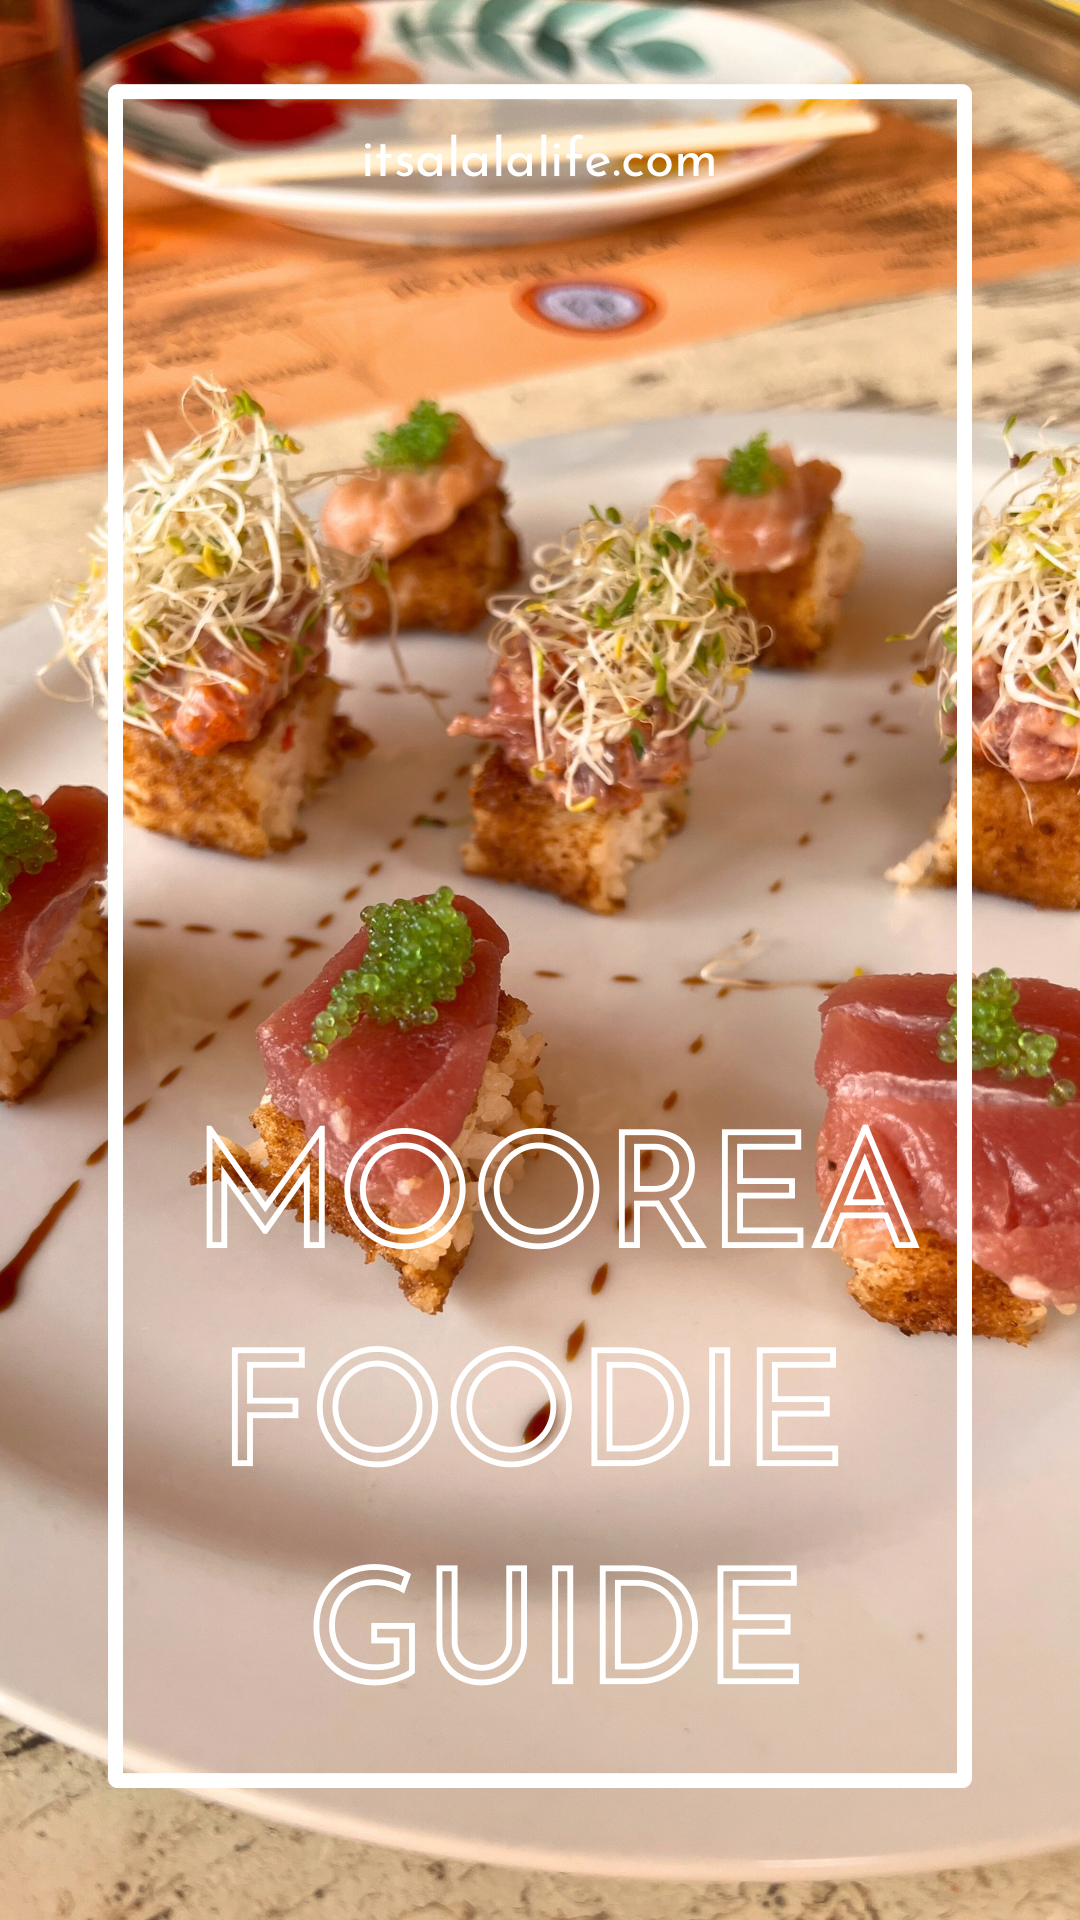 Moorea Foodie Guide